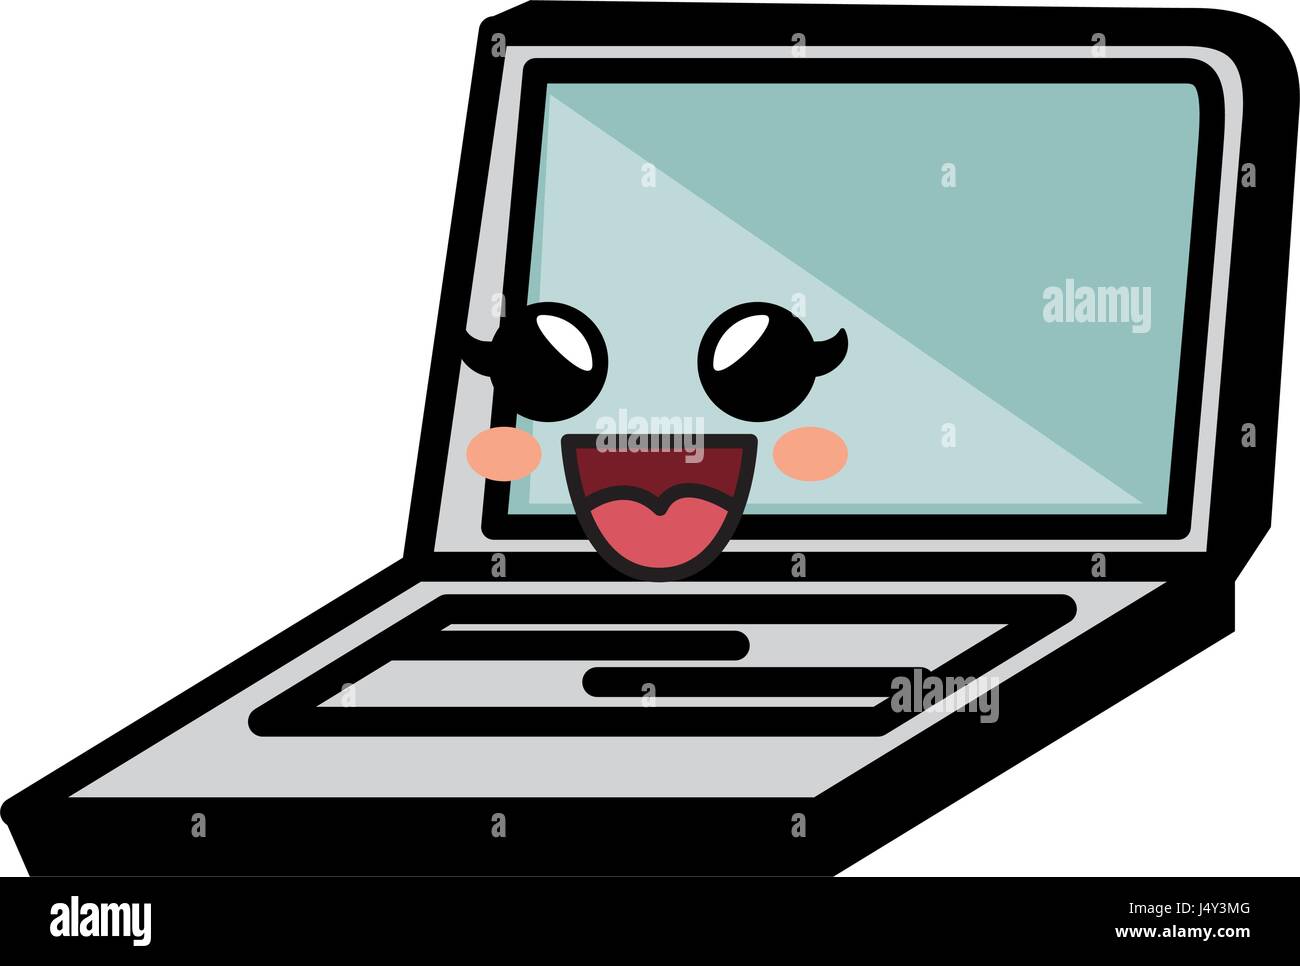 Laptop Kawaii Cartoon Funny Cute Stock Photos & Laptop Kawaii Cartoon ...